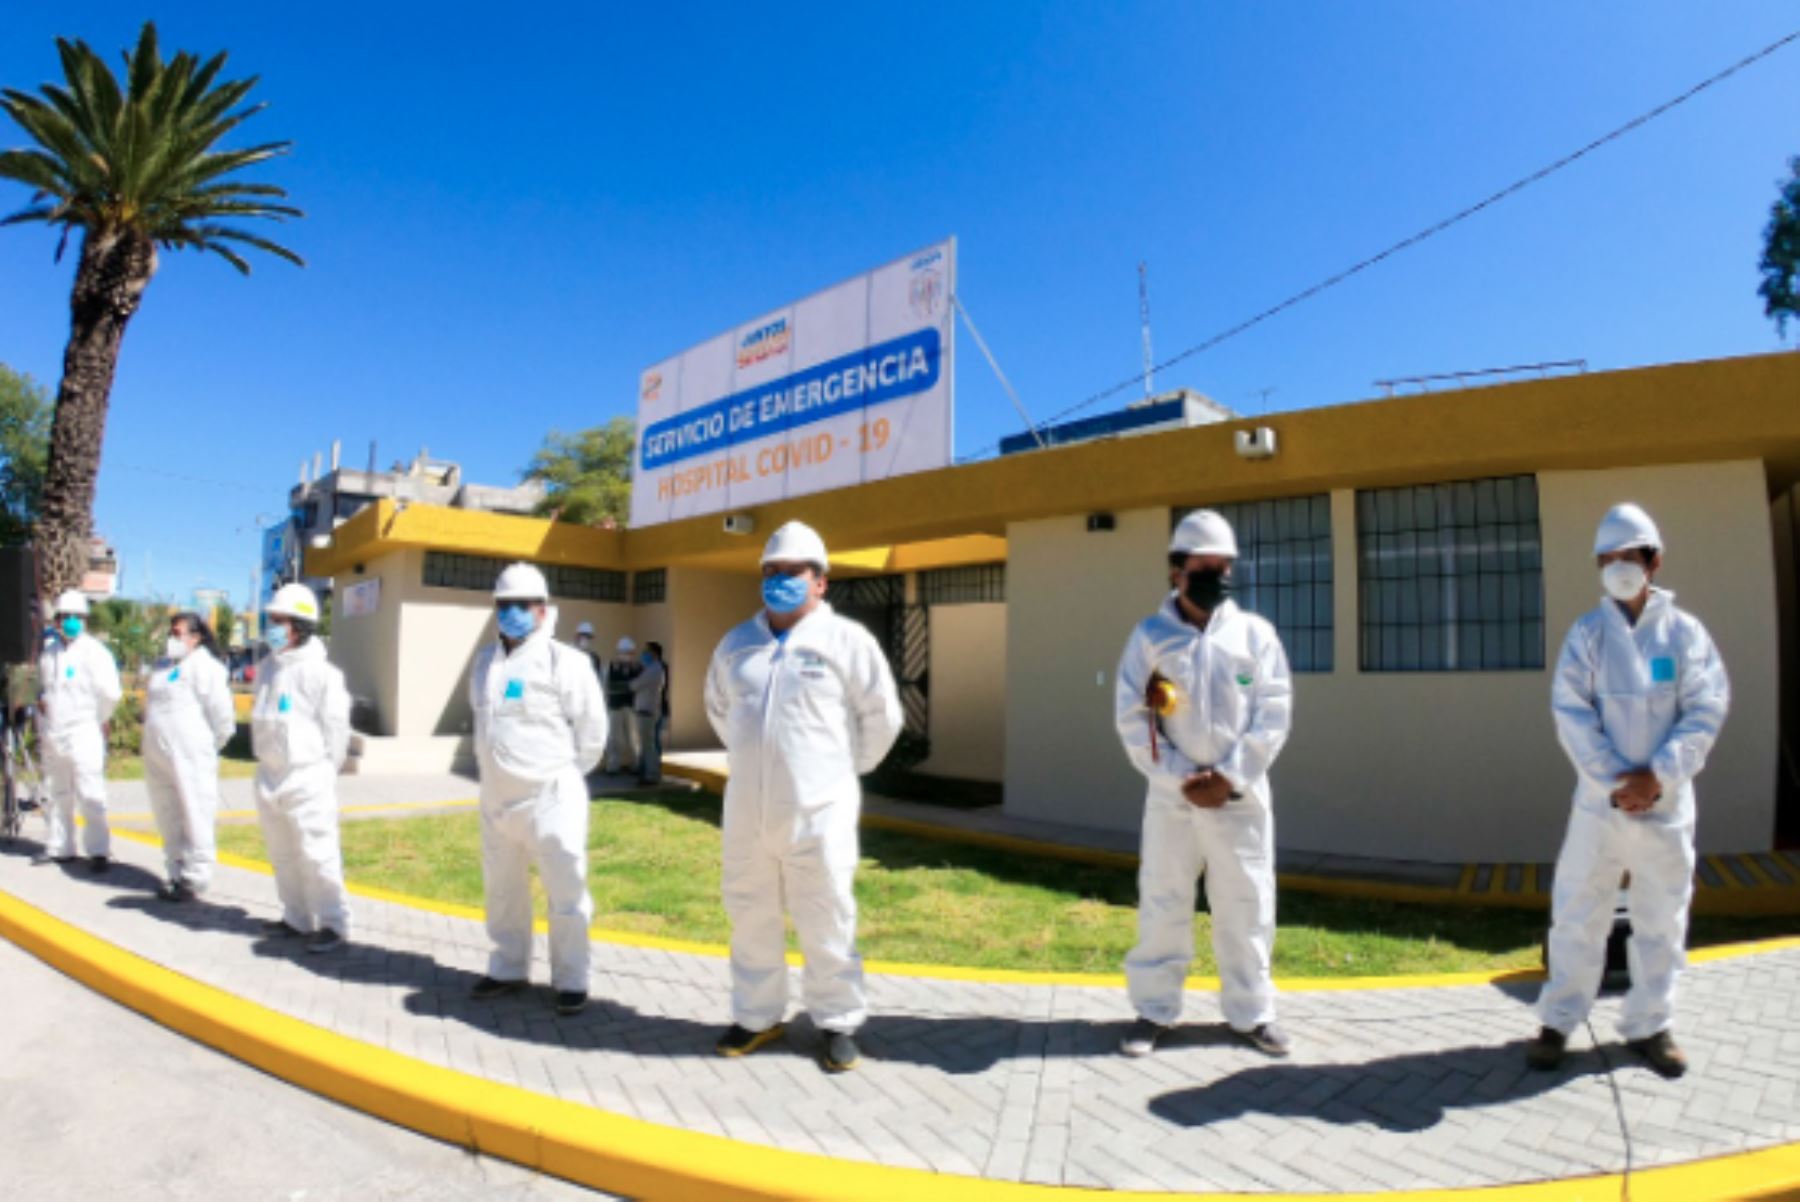 La región Arequipa puso en funcionamiento el centro de emergencia covid-19. Foto: ANDINA/Difusión